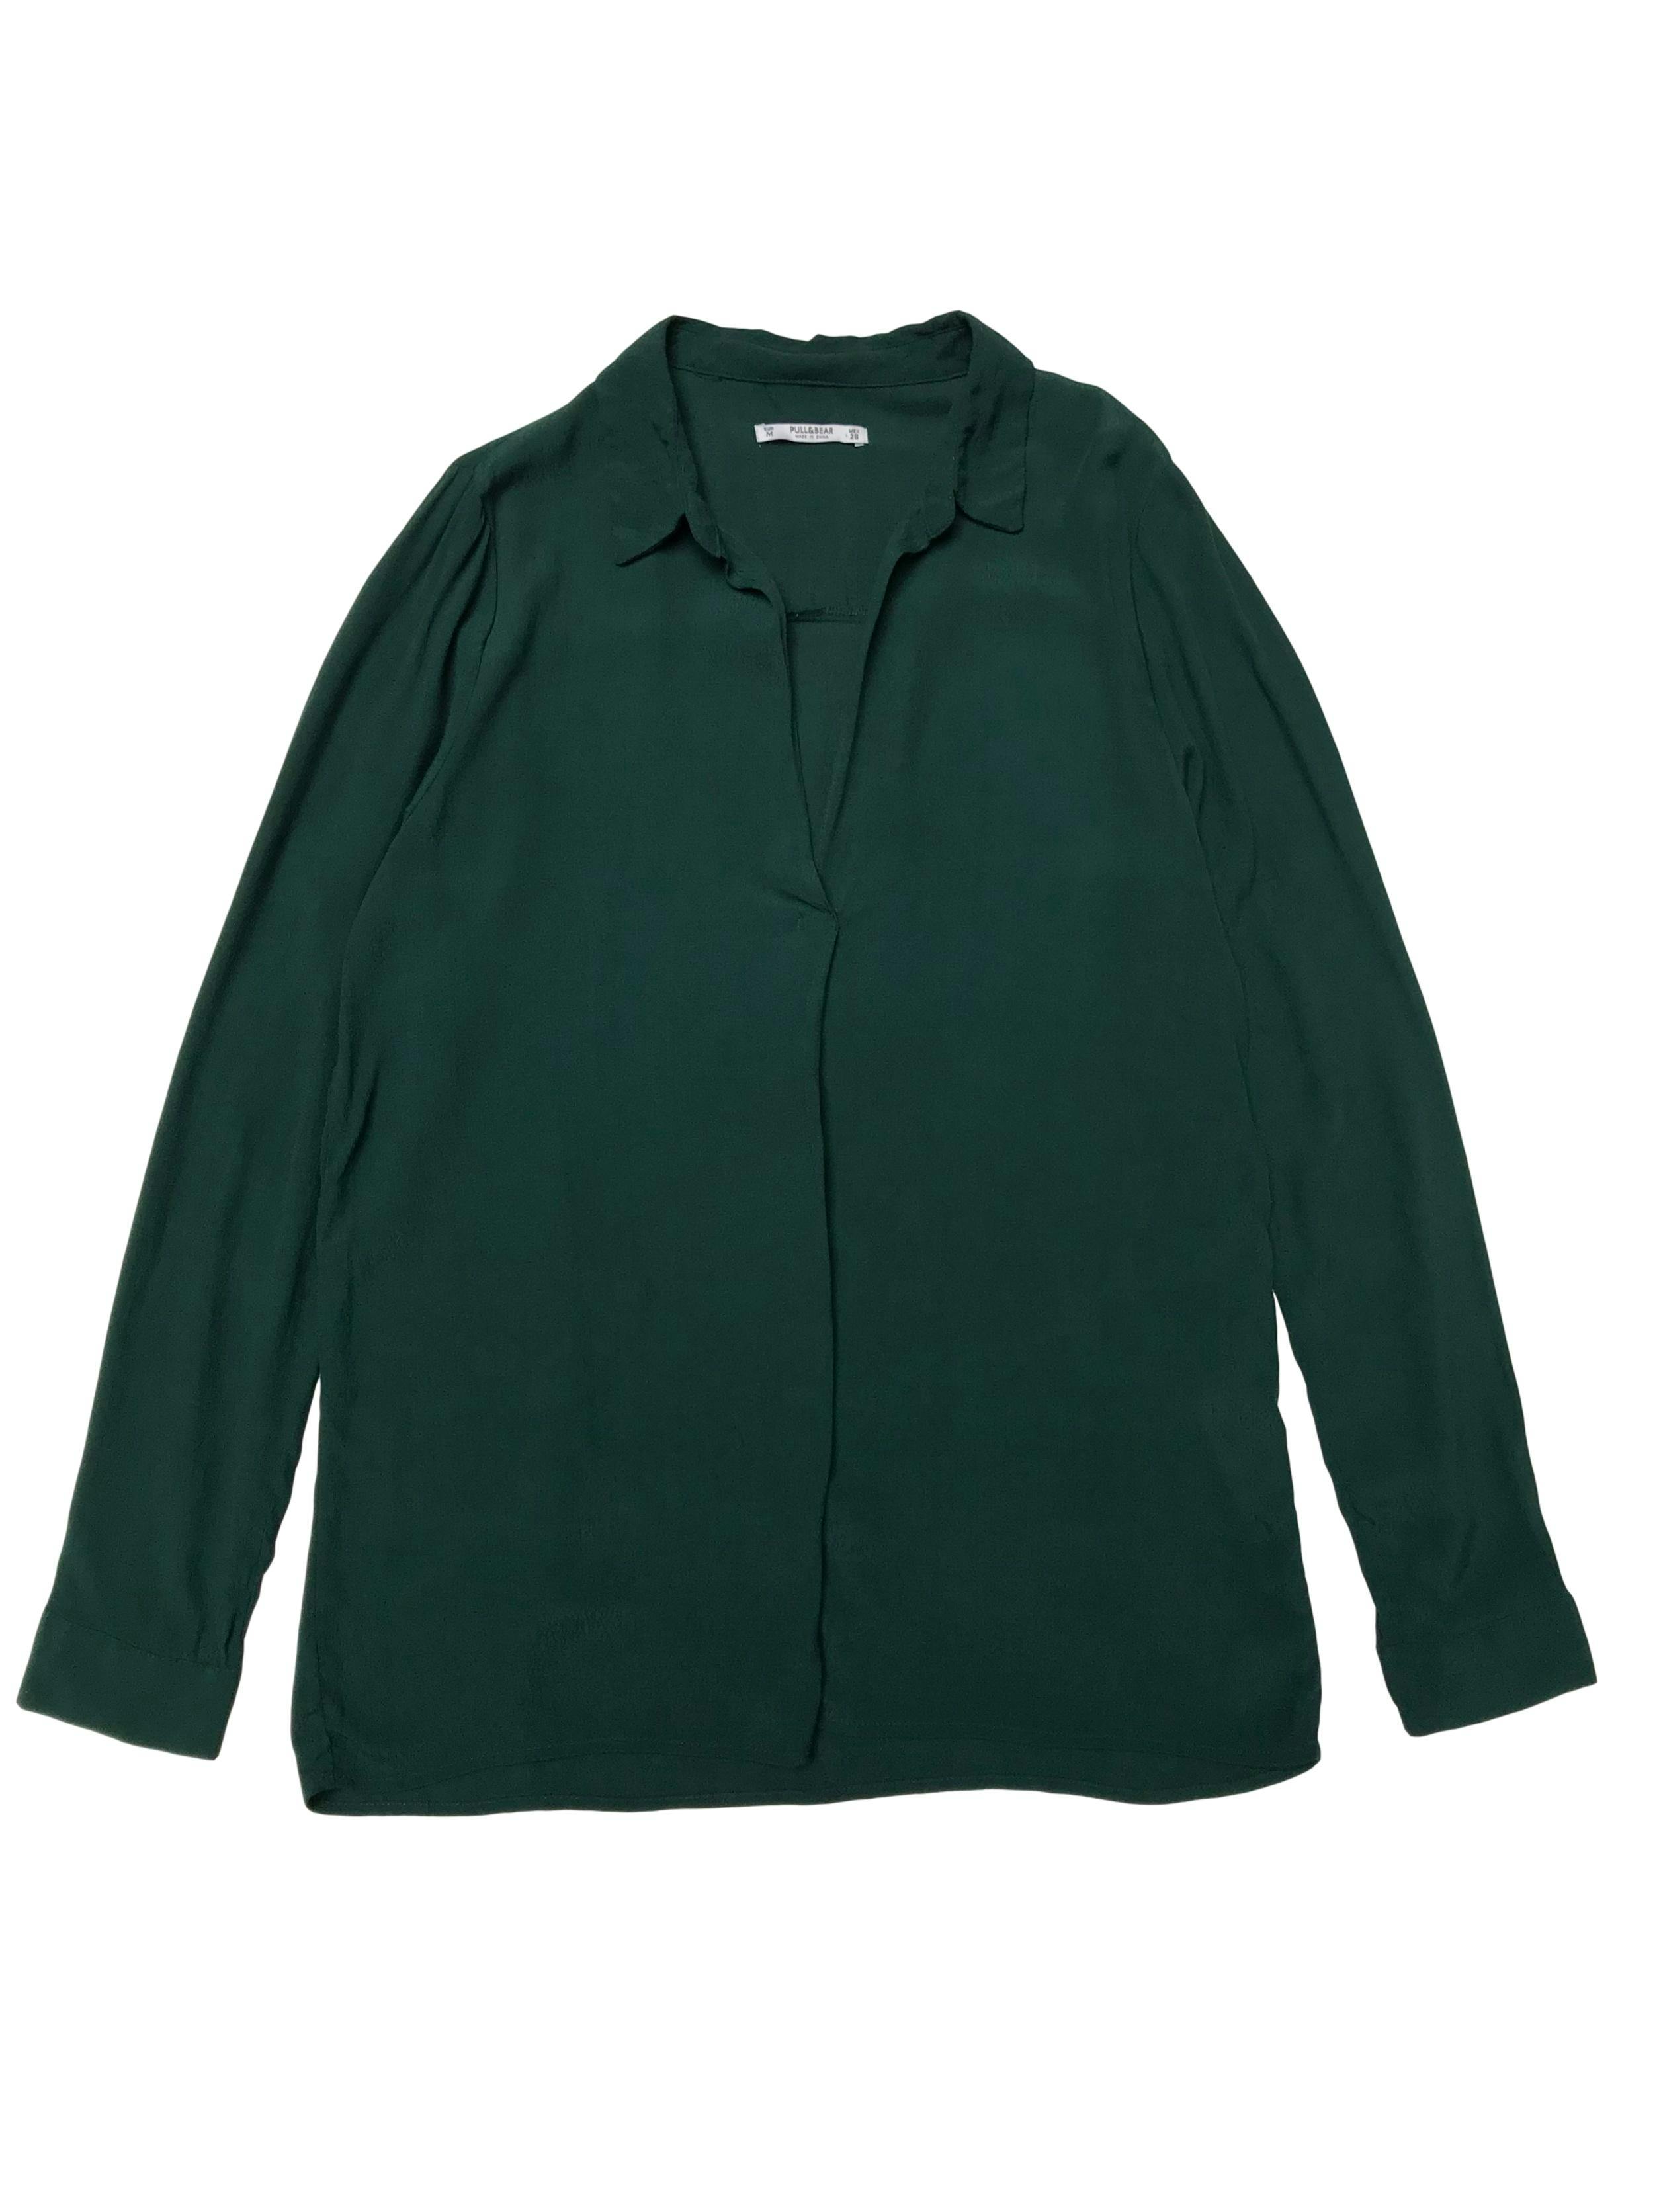 Blusa Pull&bear de tela plana verde con cuello camisero y escote en V. Fresca y suelta